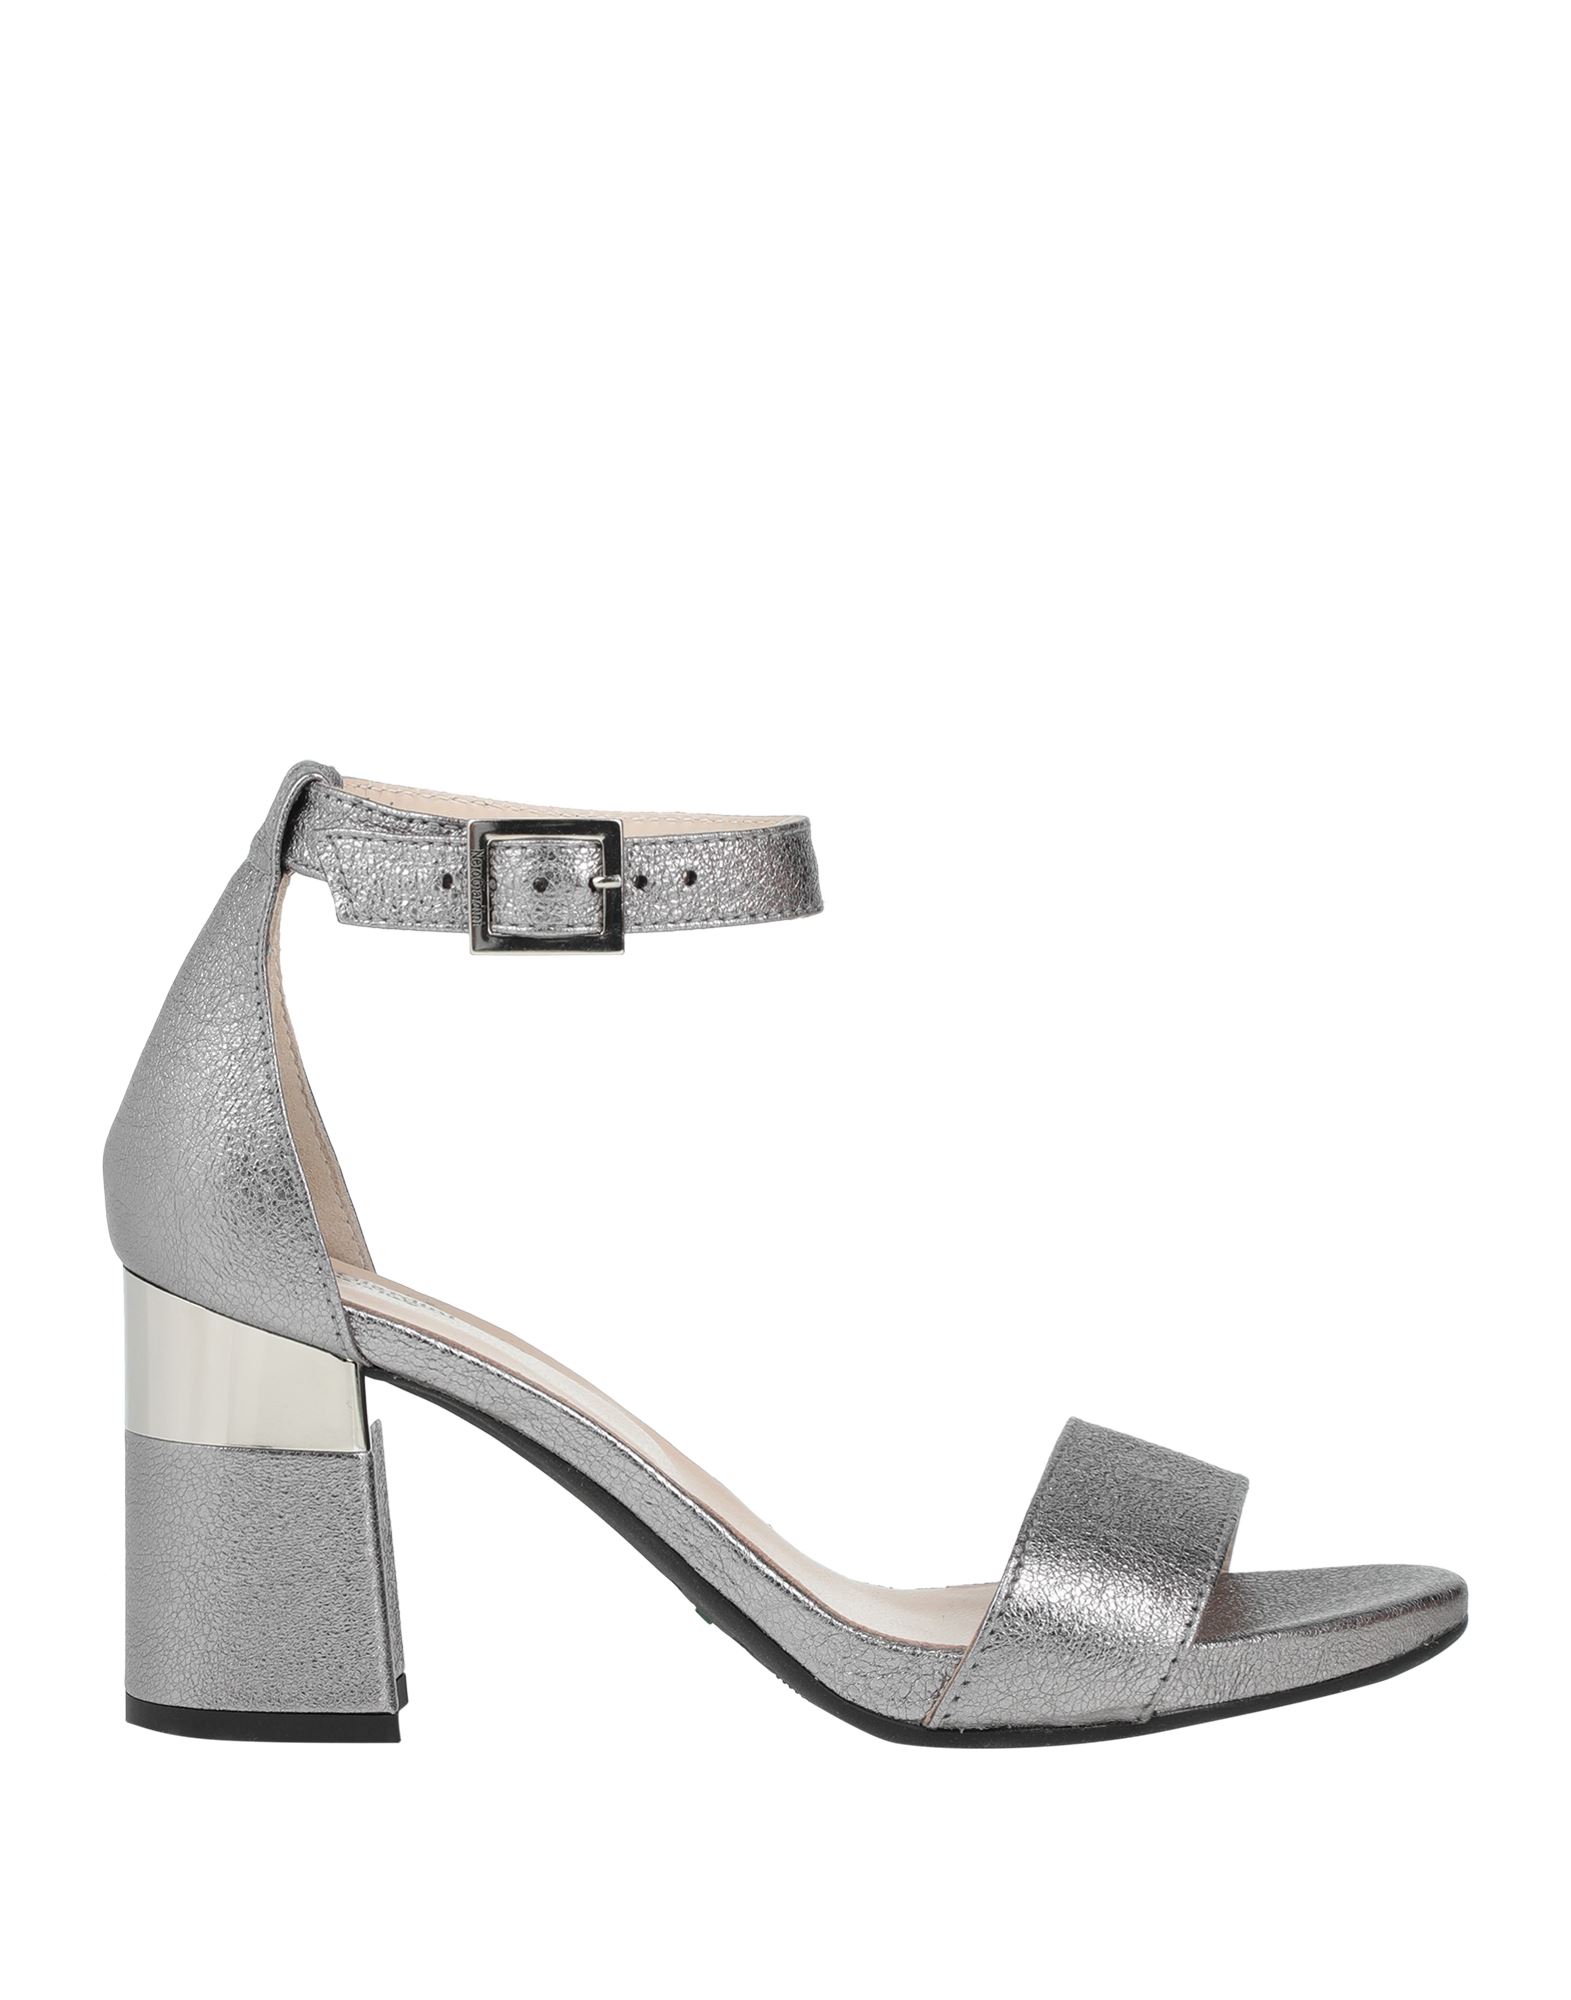 Nero Giardini Sandals In Silver